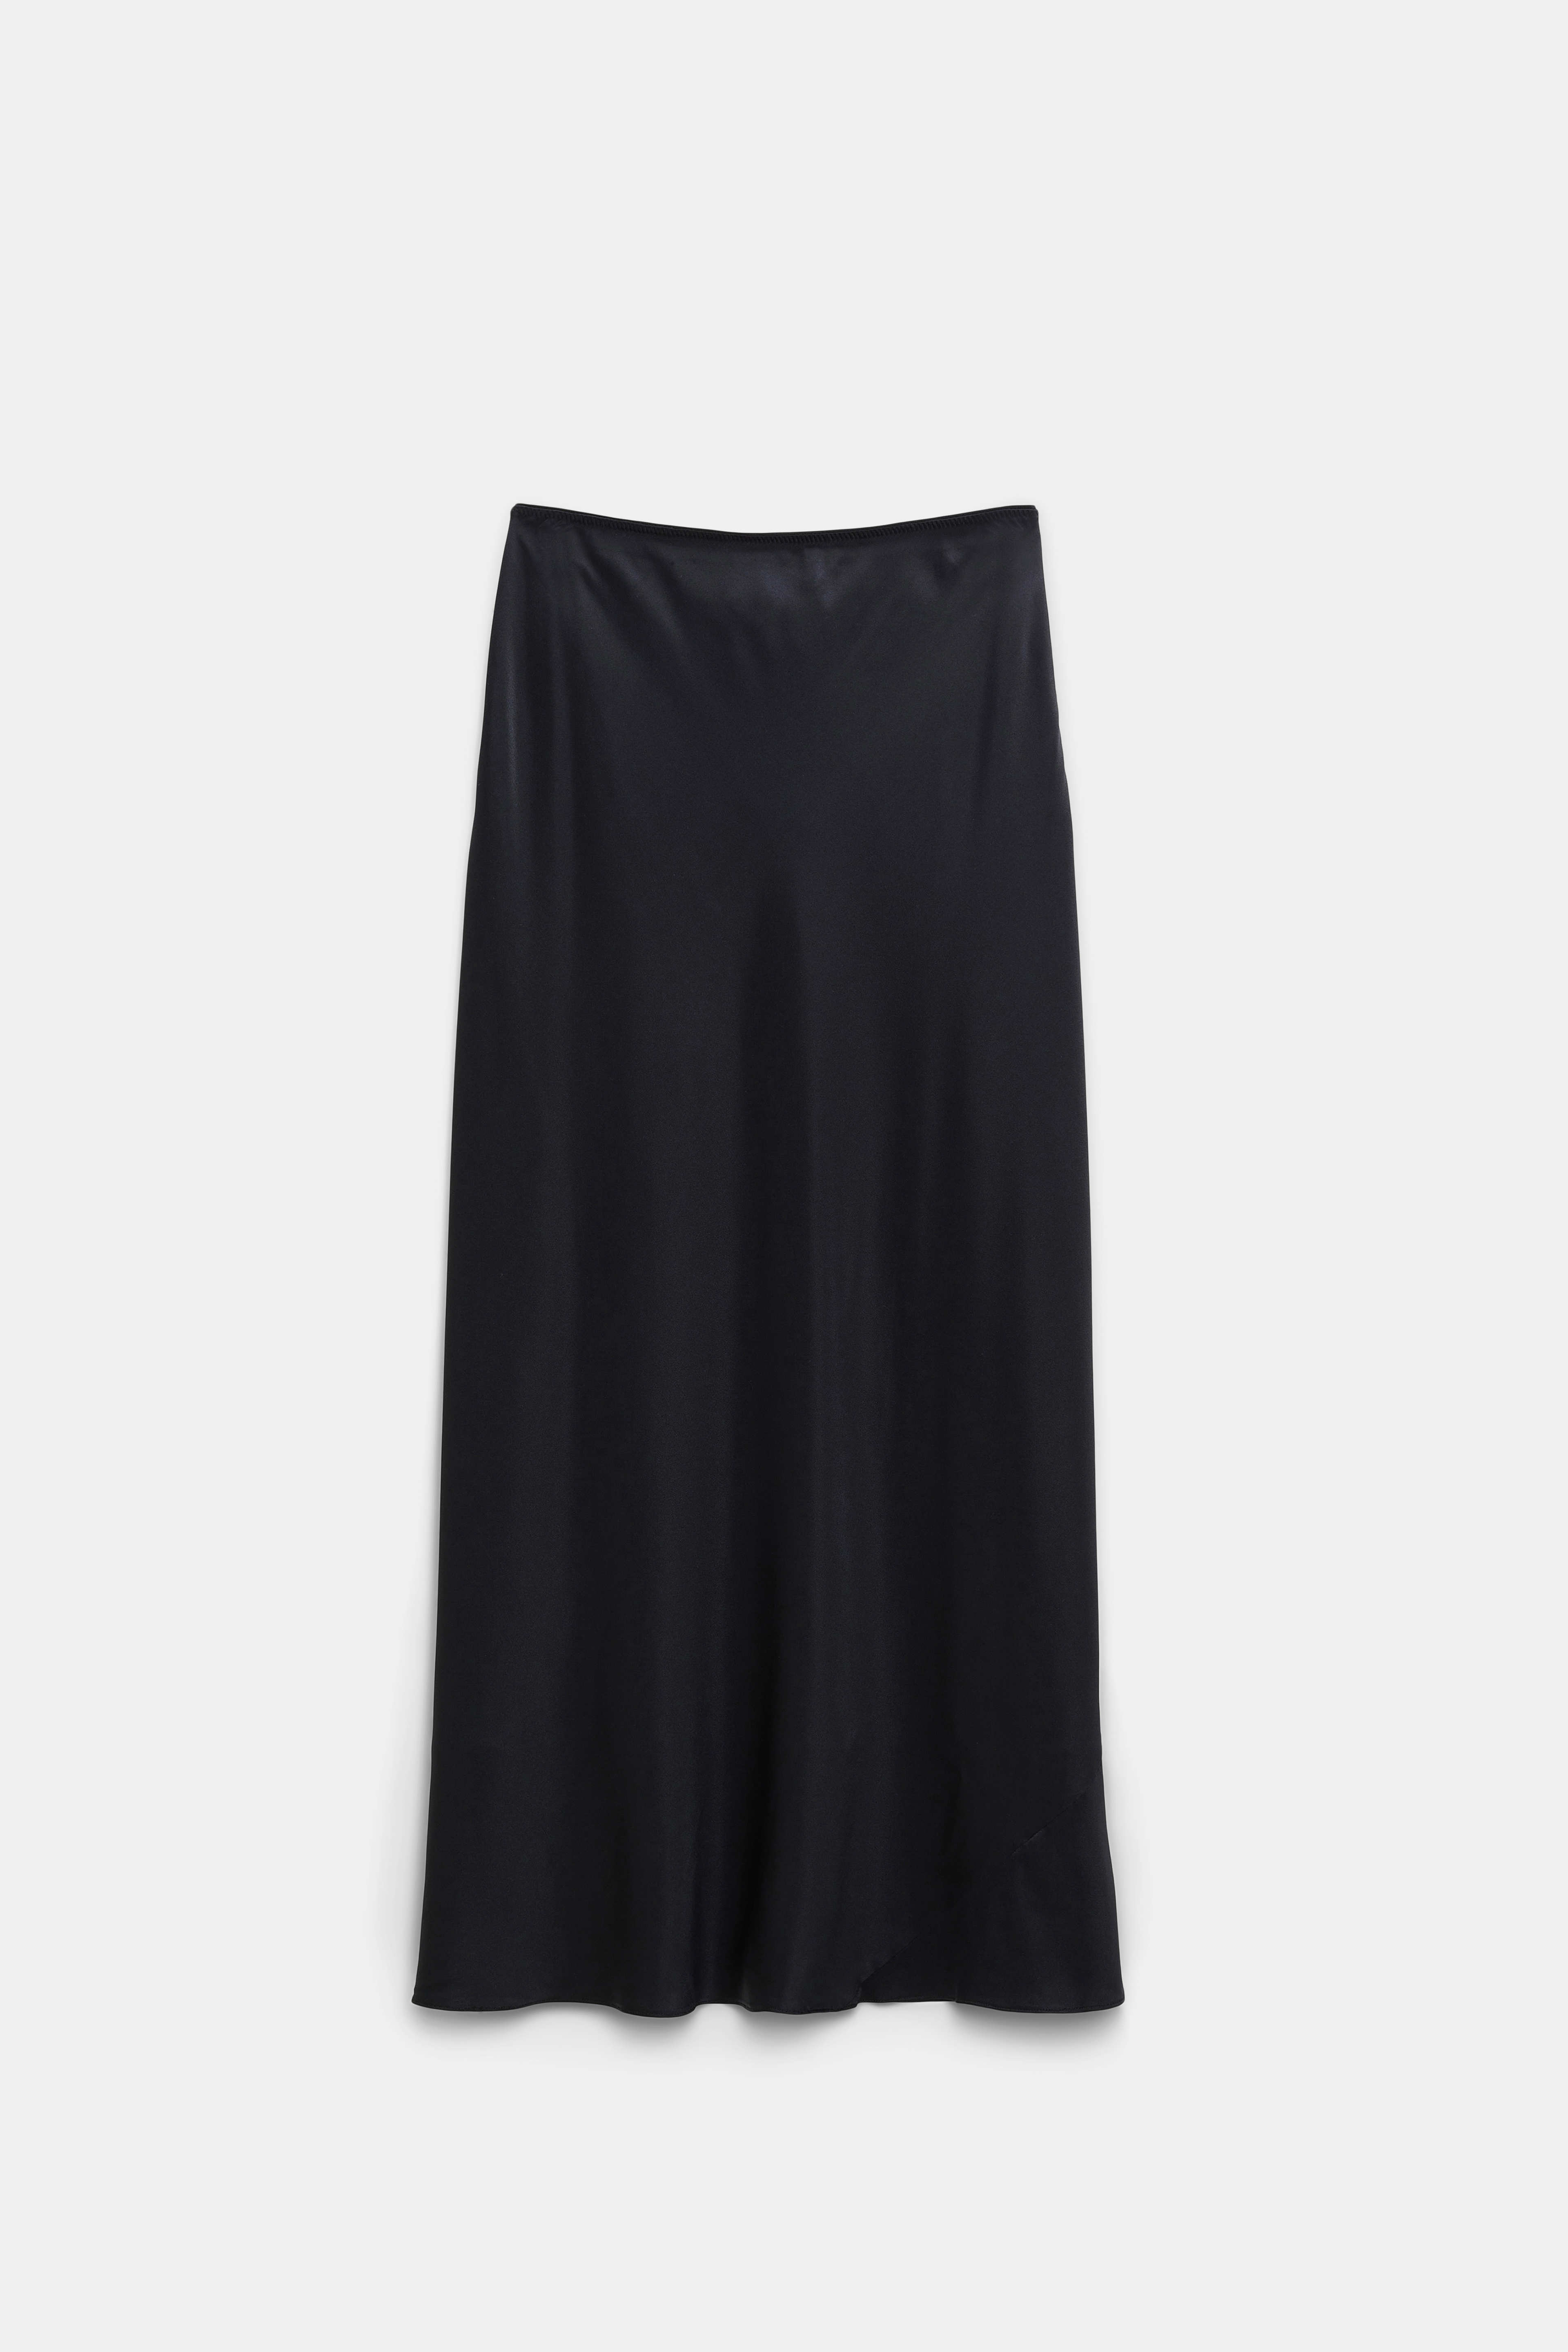 Dorothee Schumacher Sense Of Shine Skirt In Black